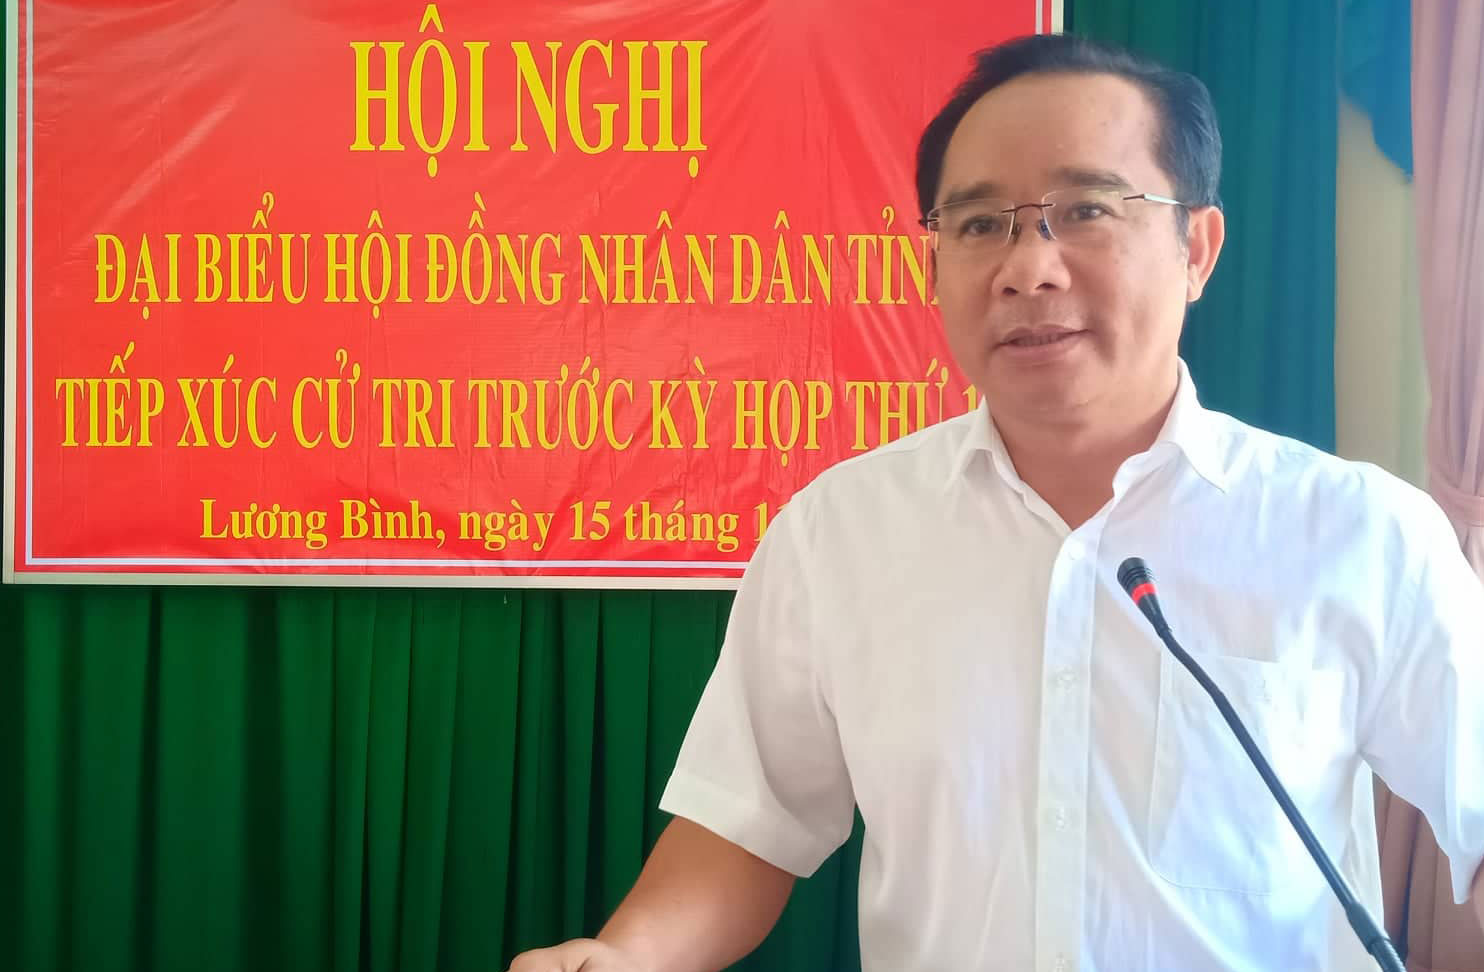  Phó Bí thư Thường trực Tỉnh ủy - Nguyễn Văn Được giải trình một số vấn đề cử tri quan tâm